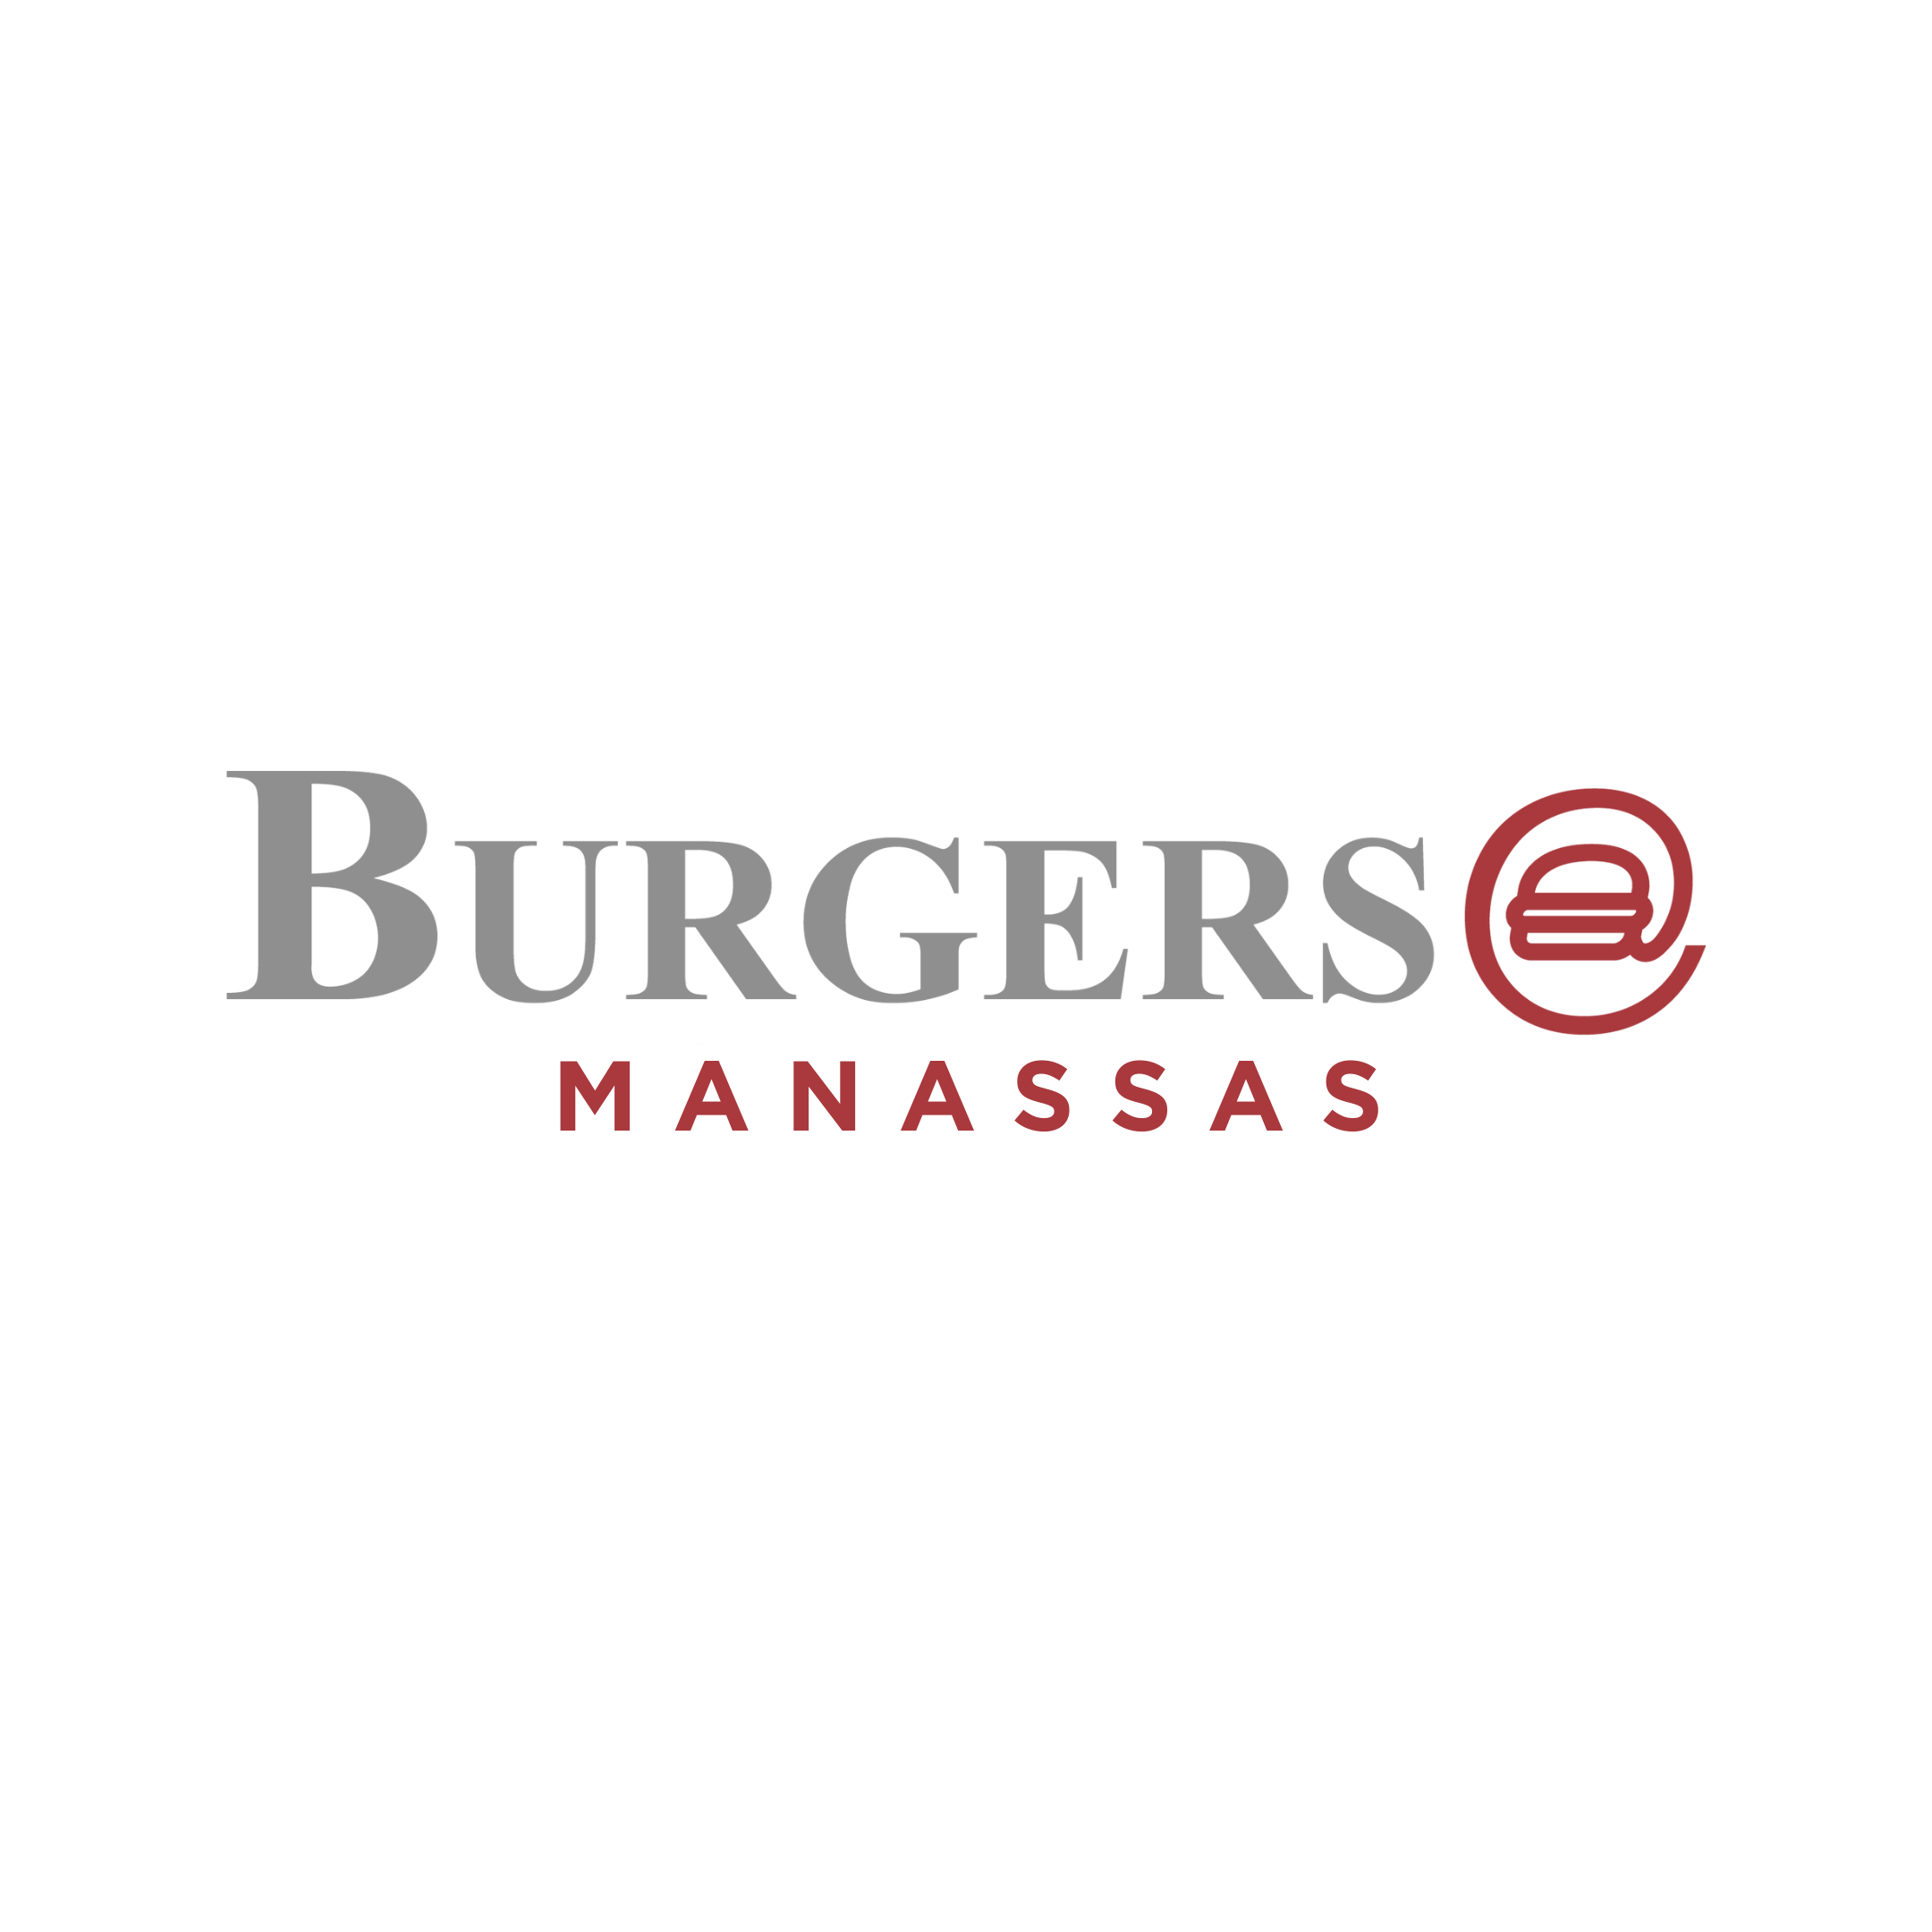 Burgers @ Manassas Jobs